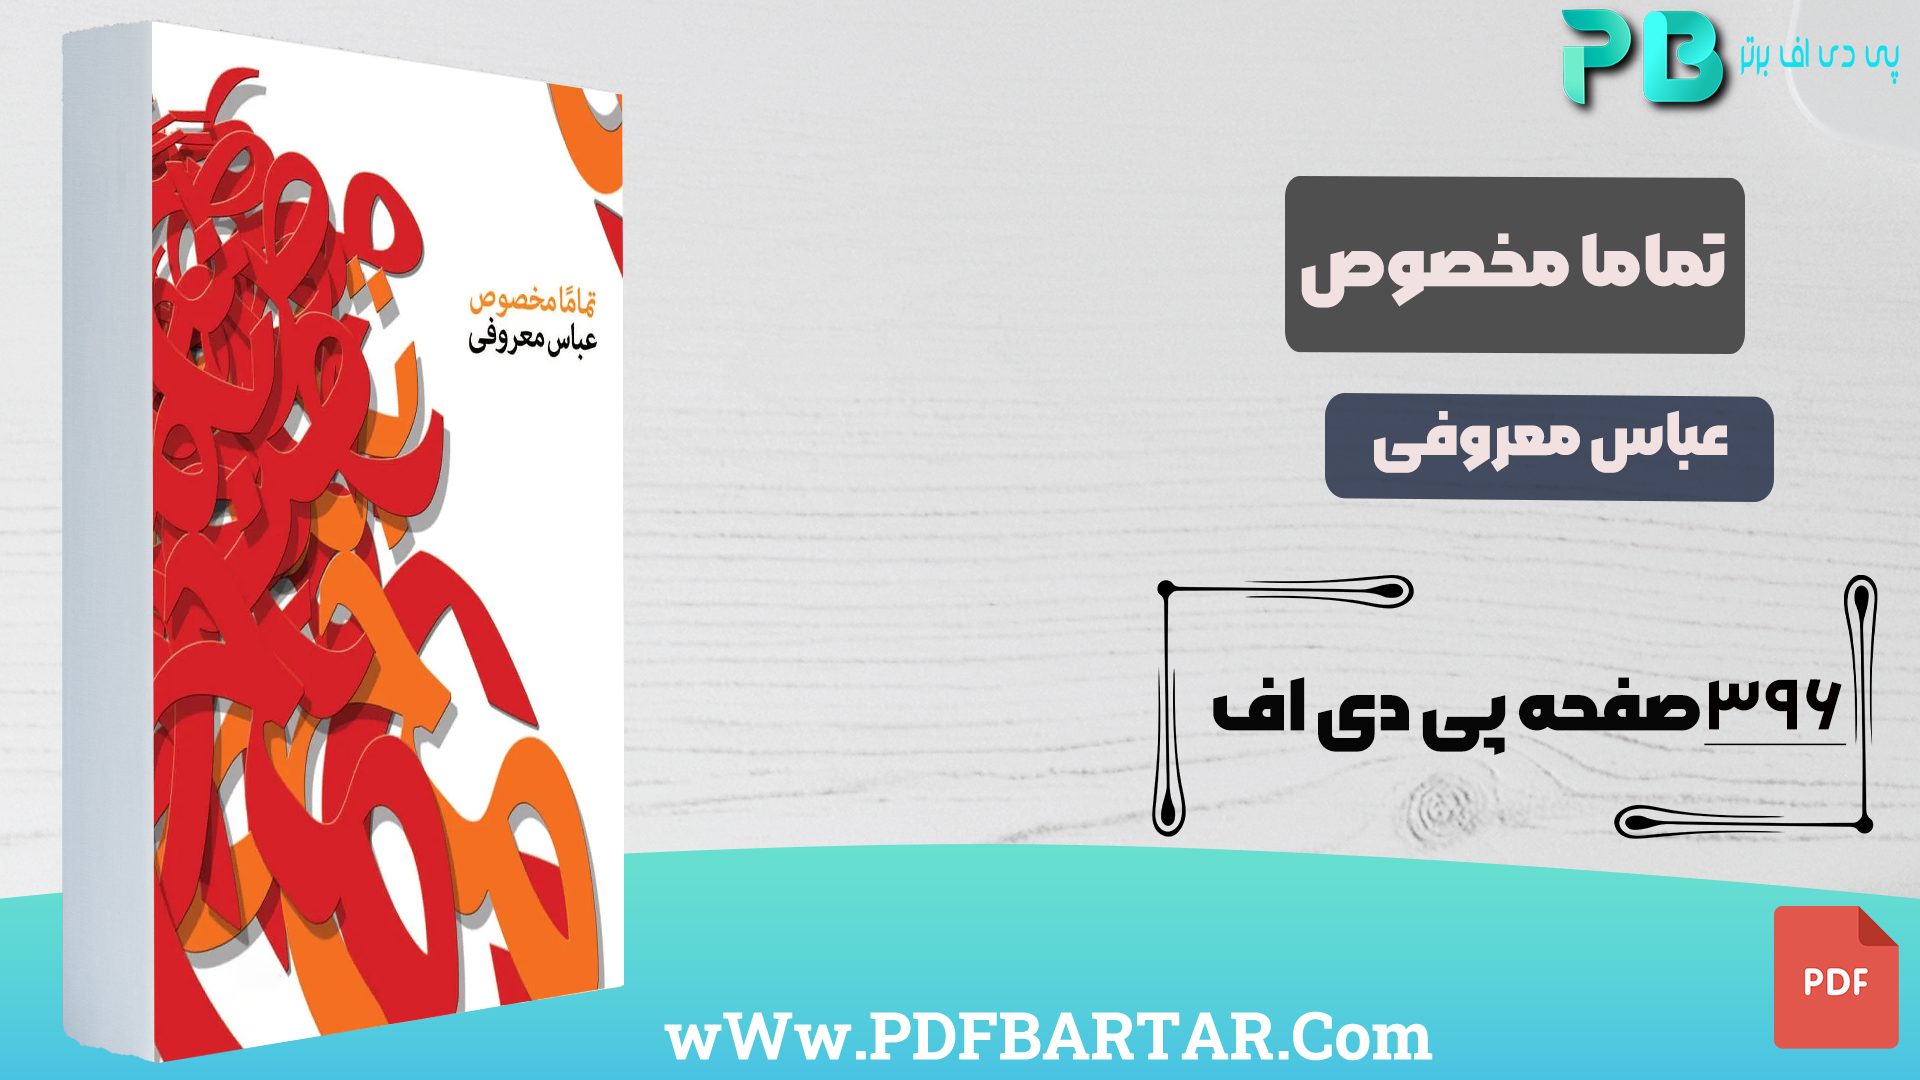 دانلود پی دی اف کتاب تماما مخصوص عباس معروفی PDF - پی دی اف برتر